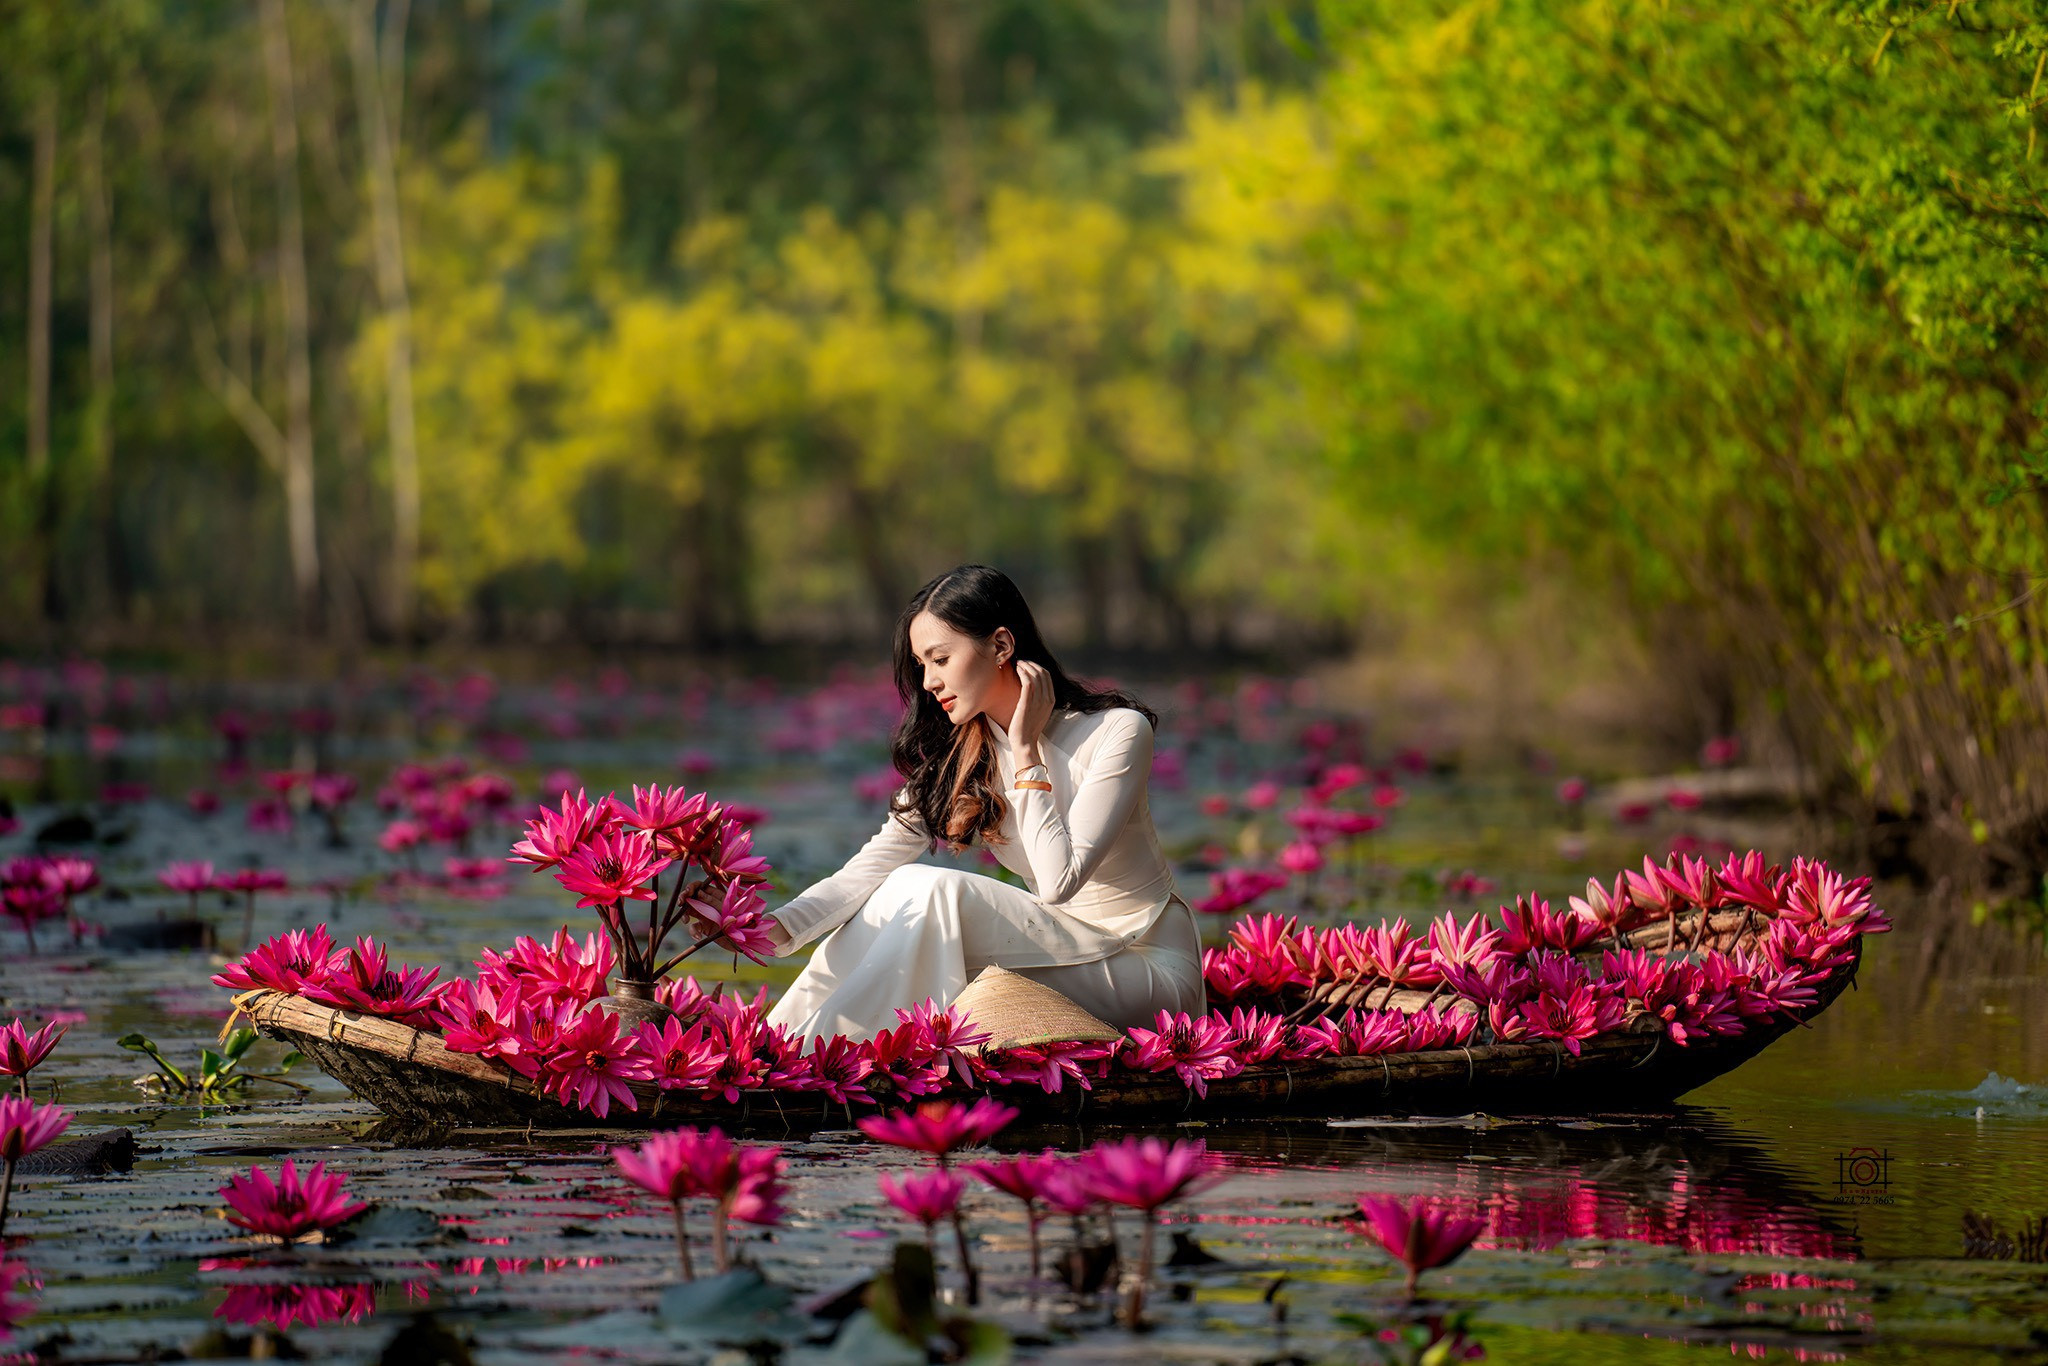 Mùa thu, tới chùa Hương ngắm thiếu nữ rạng ngời bên dòng suối 'nở hoa'